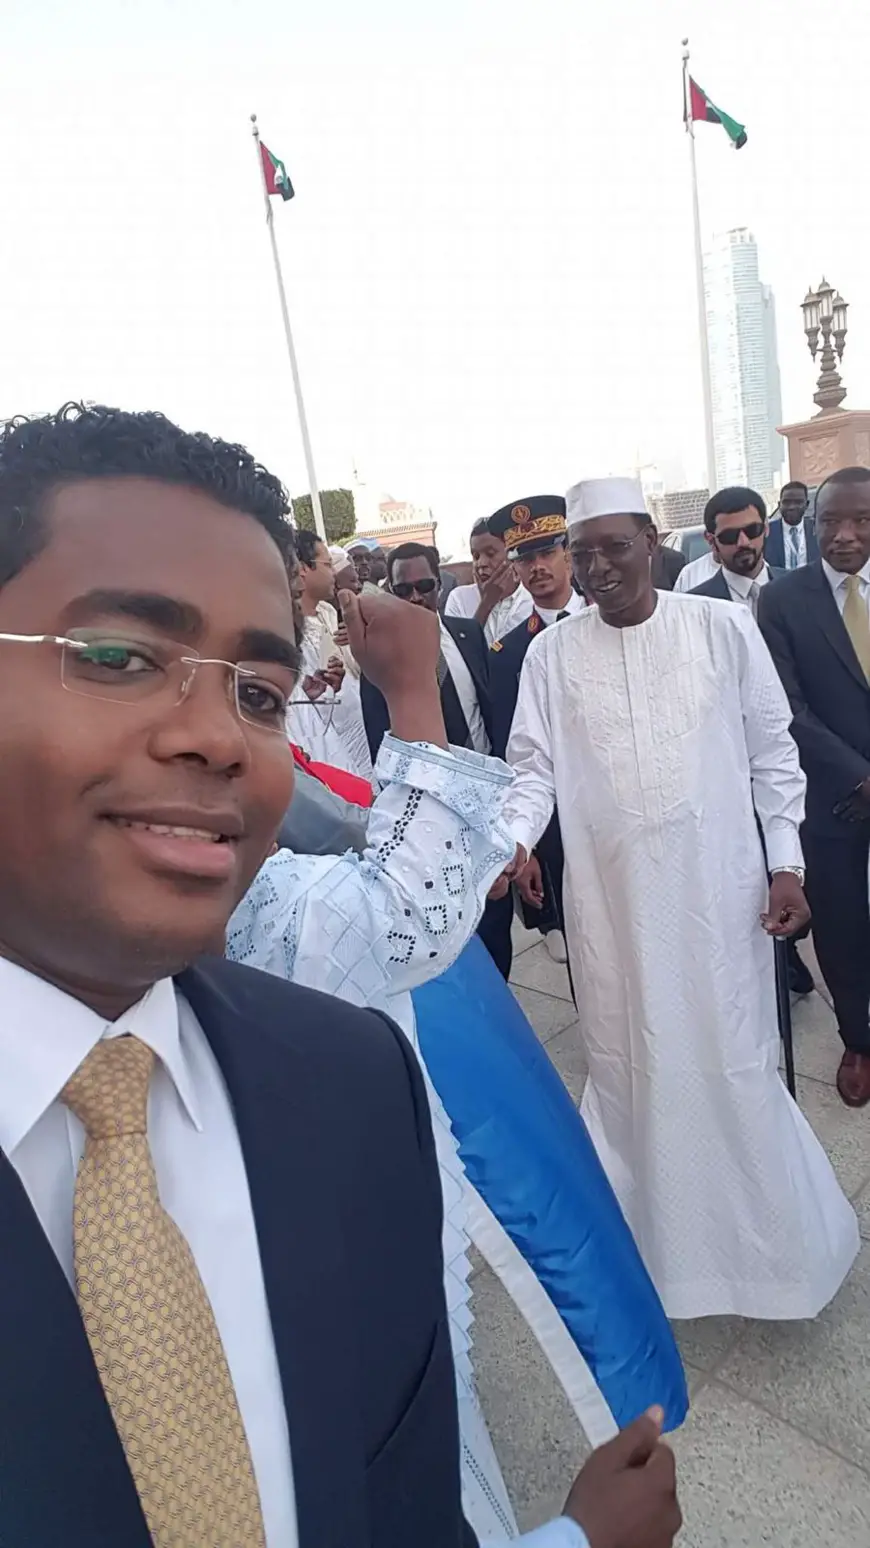 Le Président tchadien en visite aux Emirats arabes unis